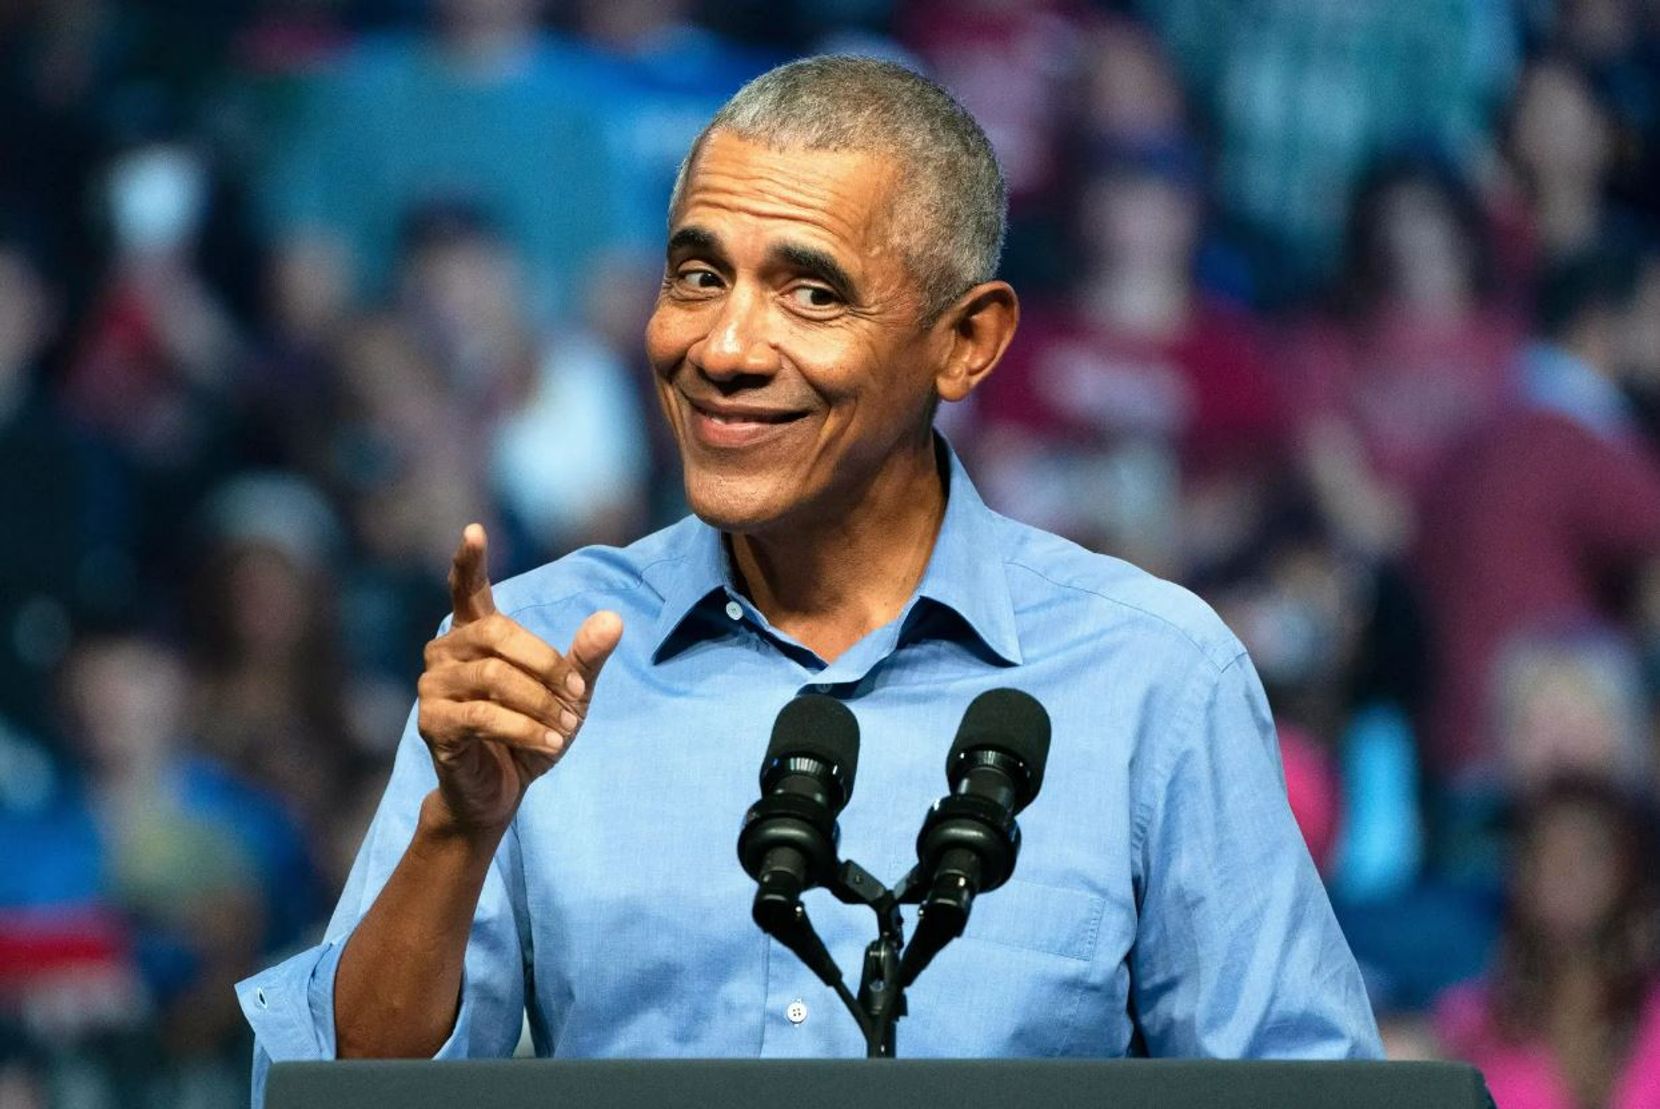 Am Samstag spricht Barack Obama im Hallenstadion.